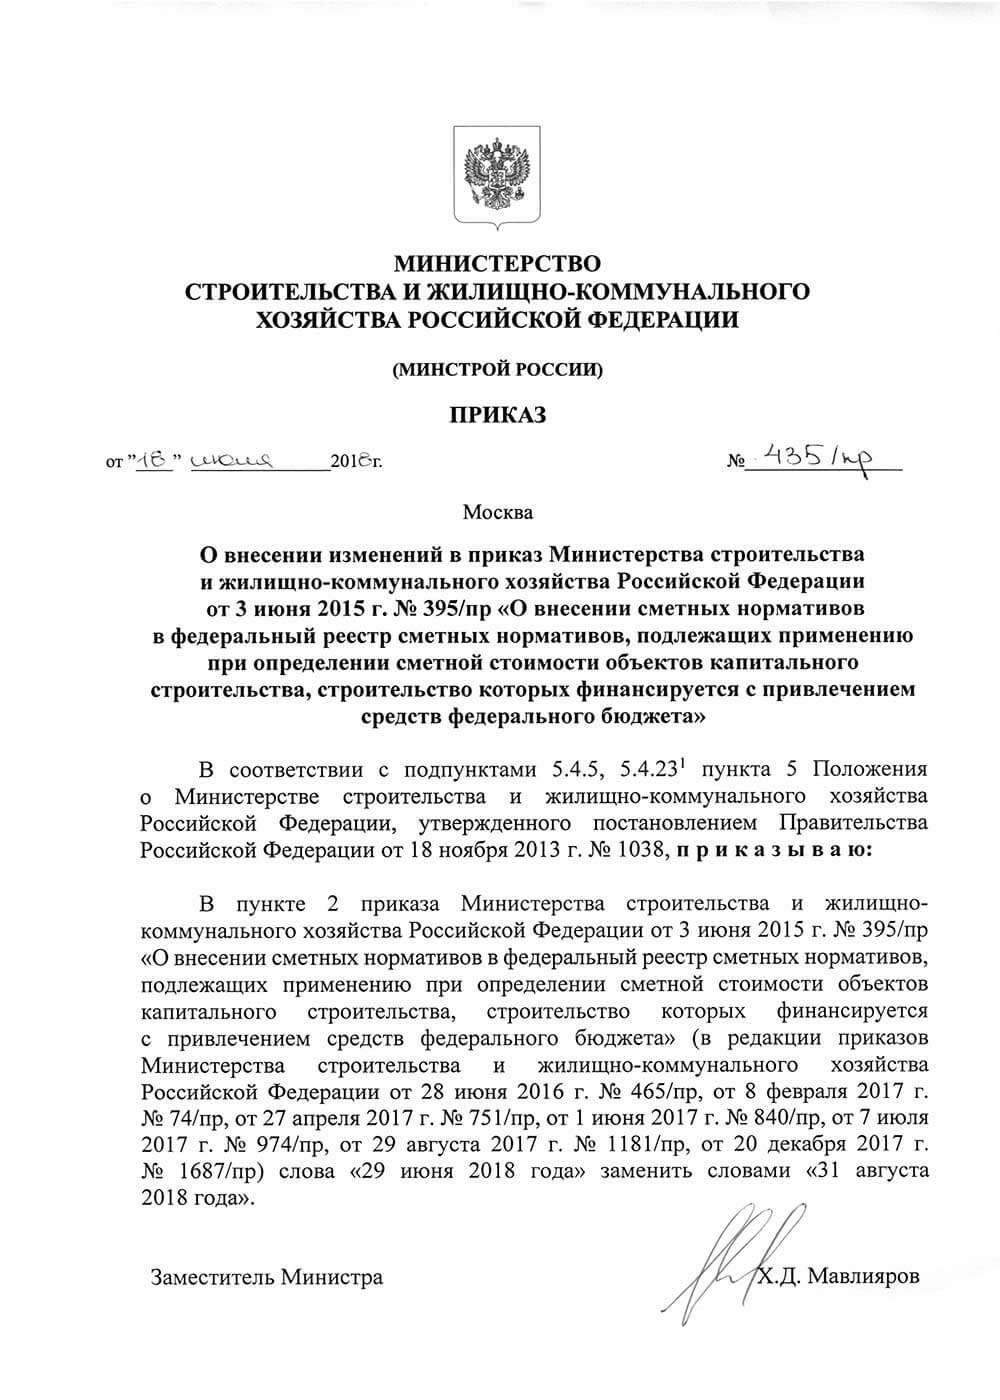 Приказ Минстроя 437/пр от 05.08.2014 с приложениями.